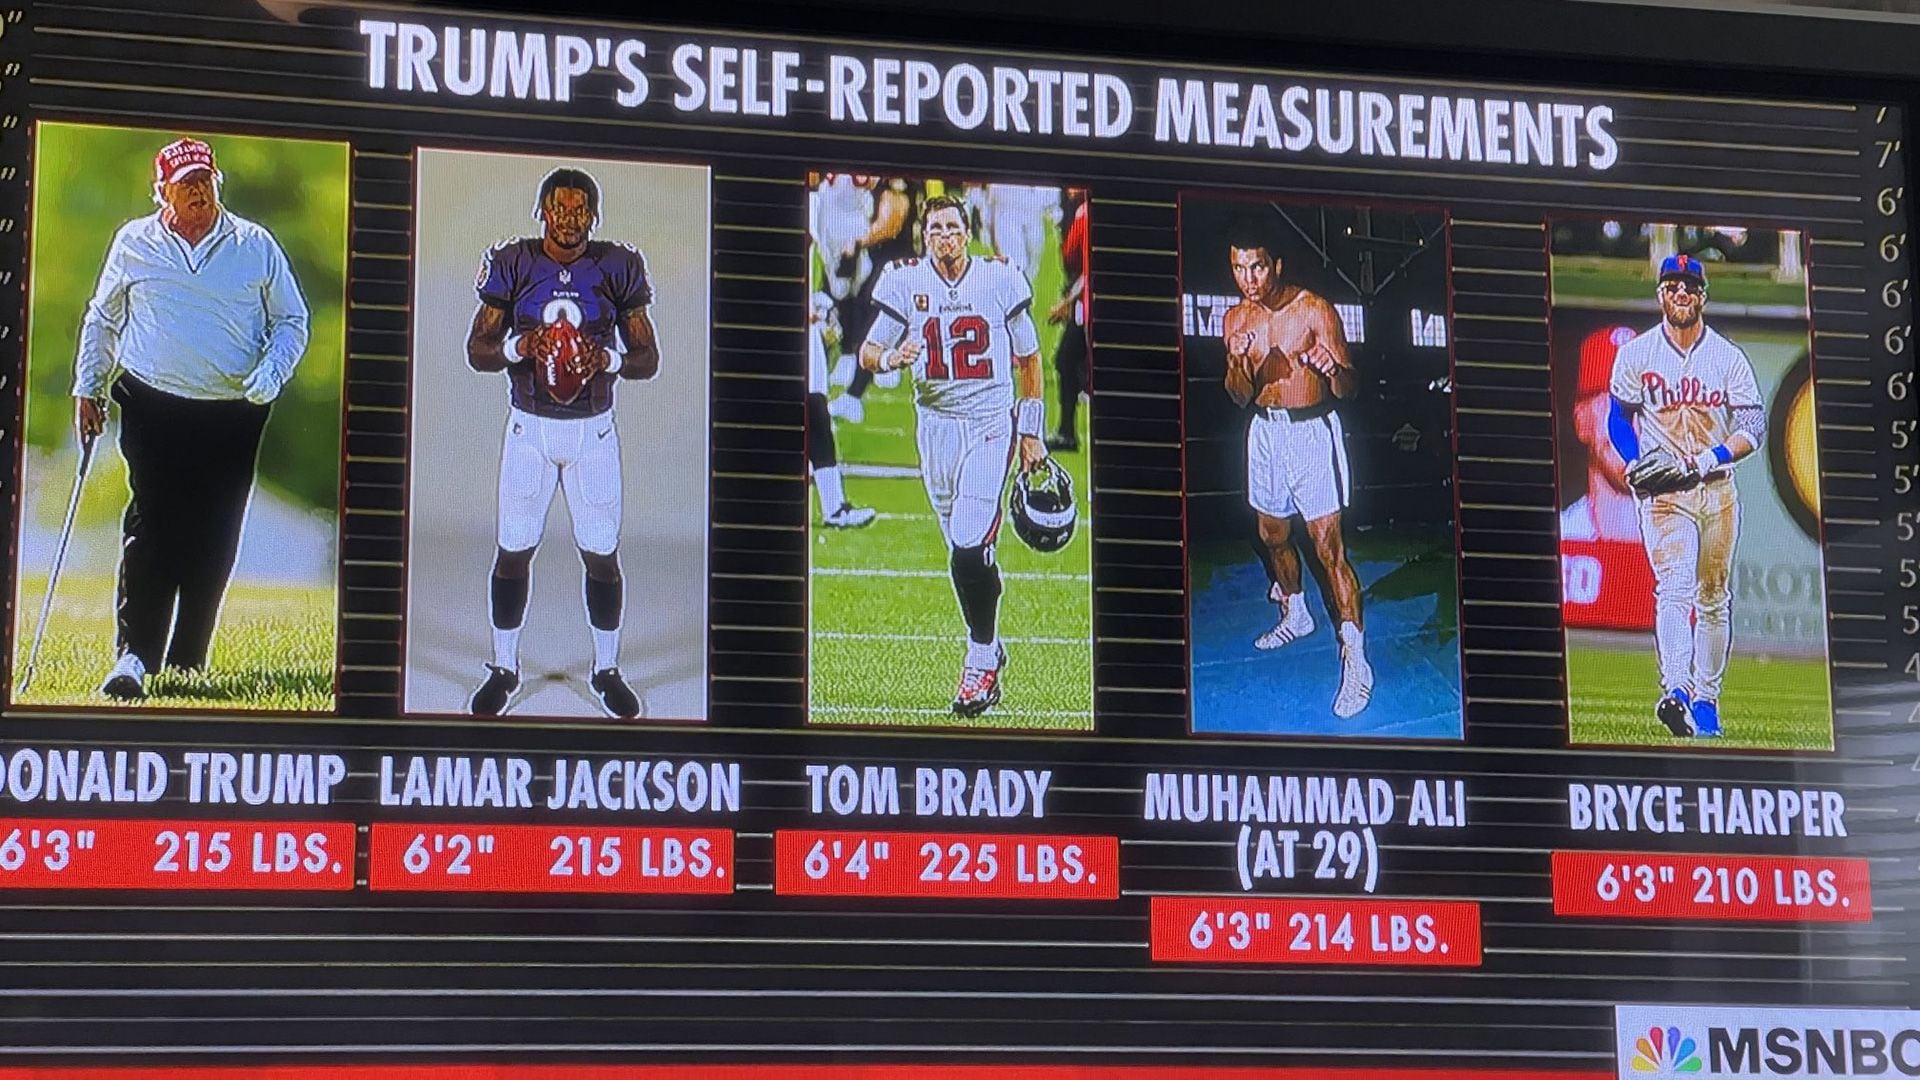 El medio MSNBC comparó a Trump con el peso y la altura de famosos deportistas